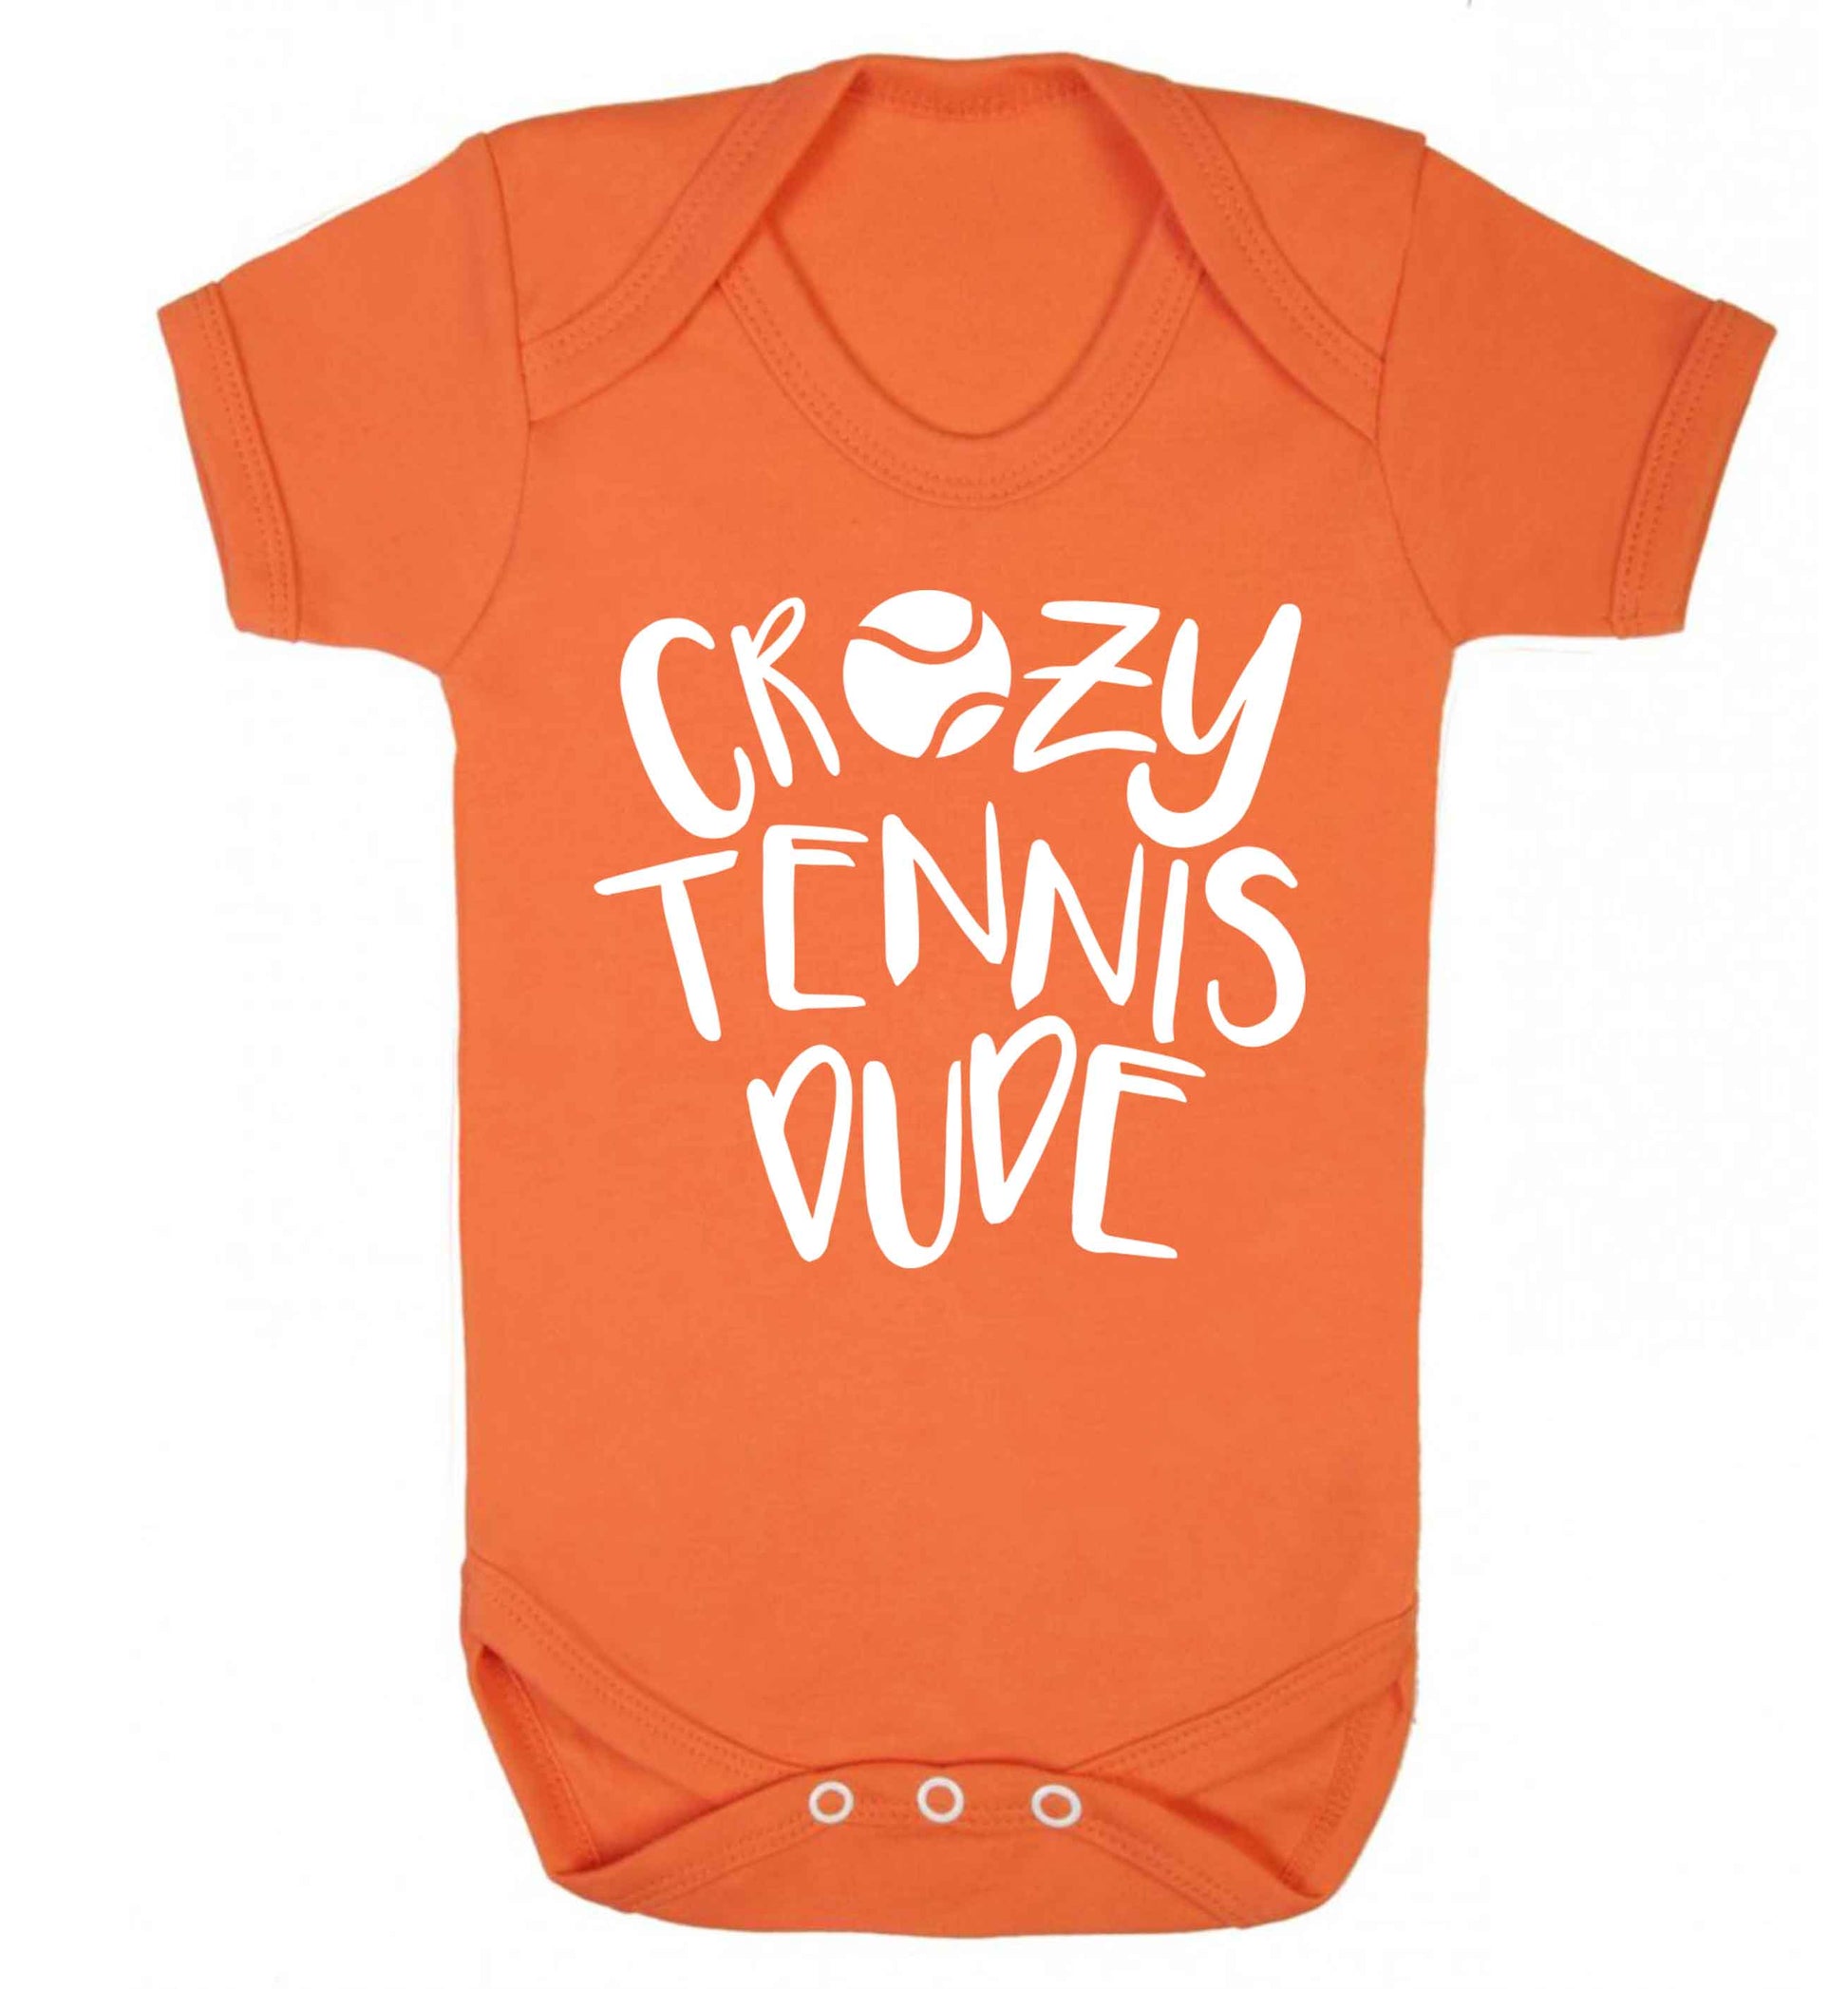 Crazy tennis dude Baby Vest orange 18-24 months